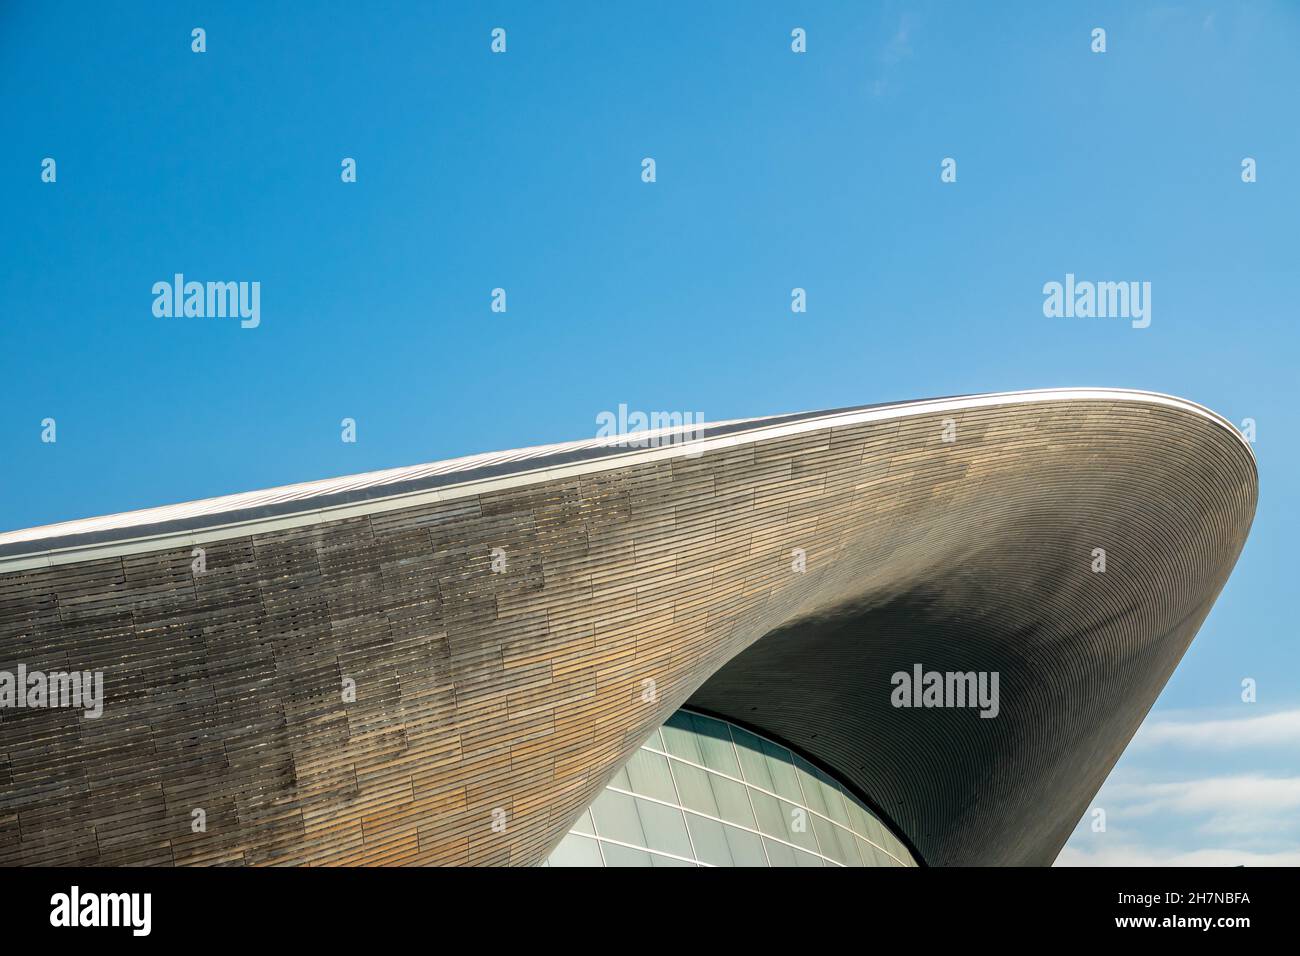 London Aquatics Centre Dekonstruktivistische Architektur mit Bogen und Betonfertigteilen, entworfen von der Architektin Zaha Hadid im Olympic Park, Stratford, London. Stockfoto